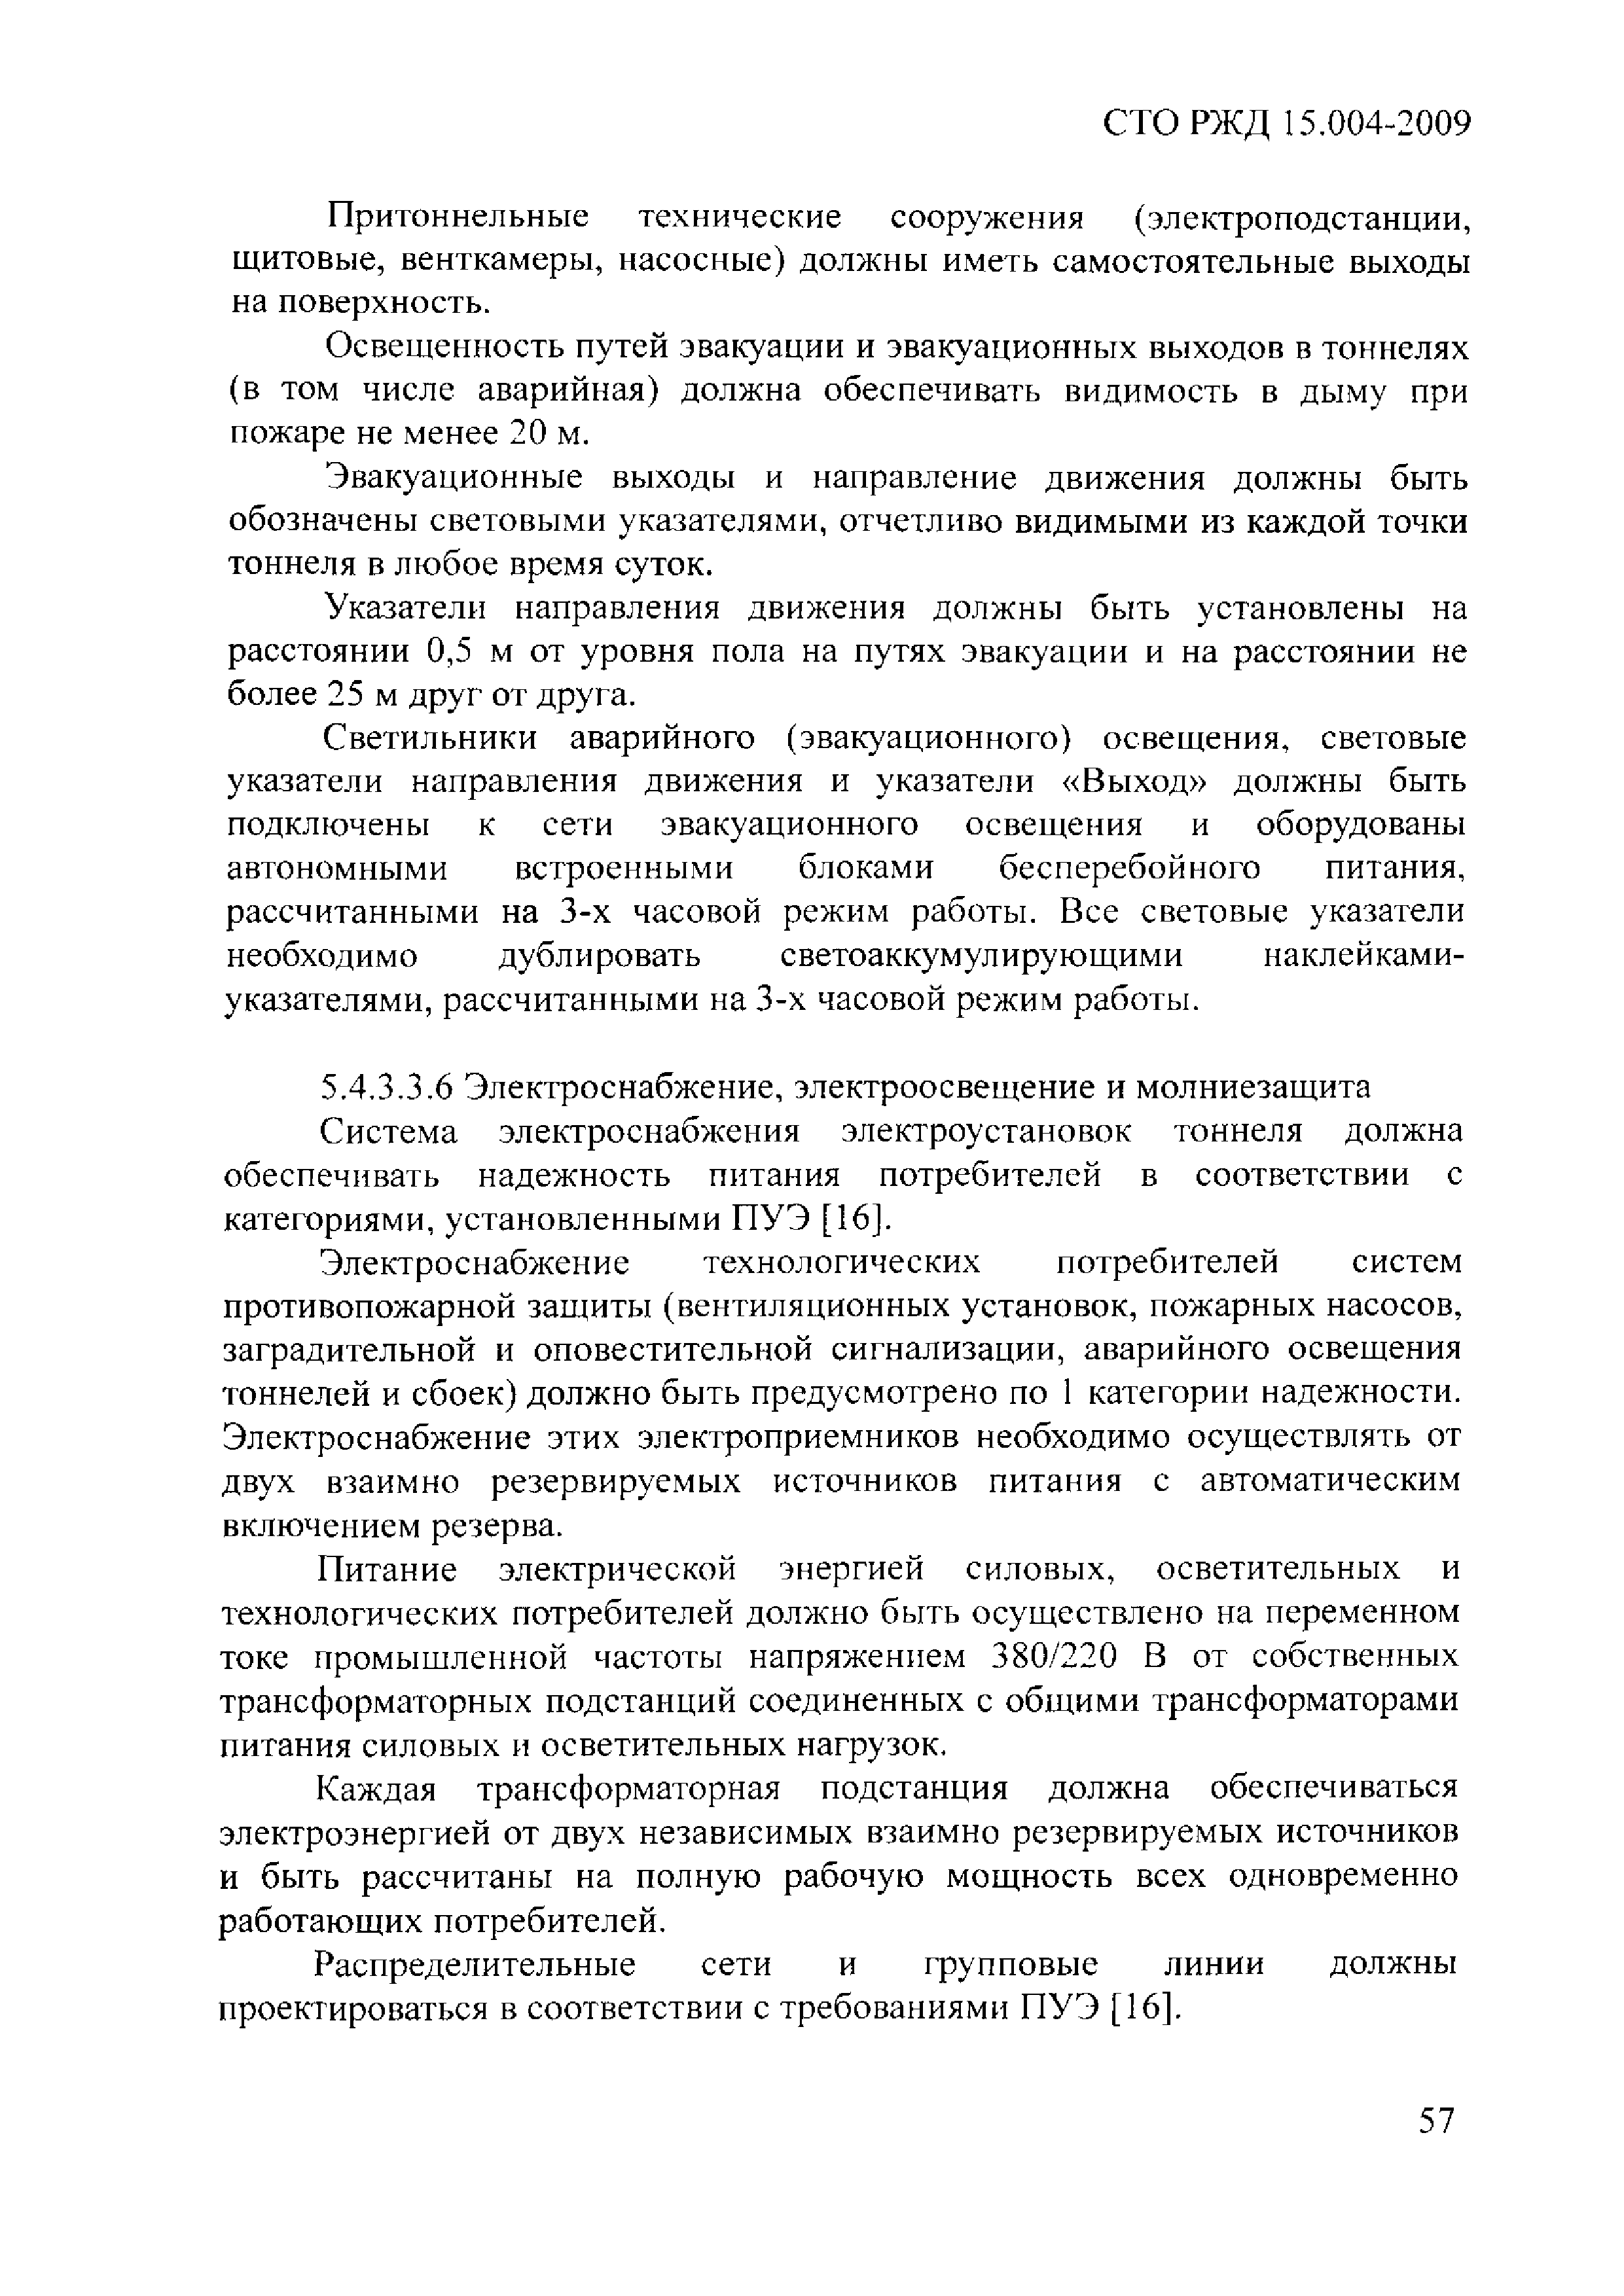 СТО РЖД 1.15.004-2009